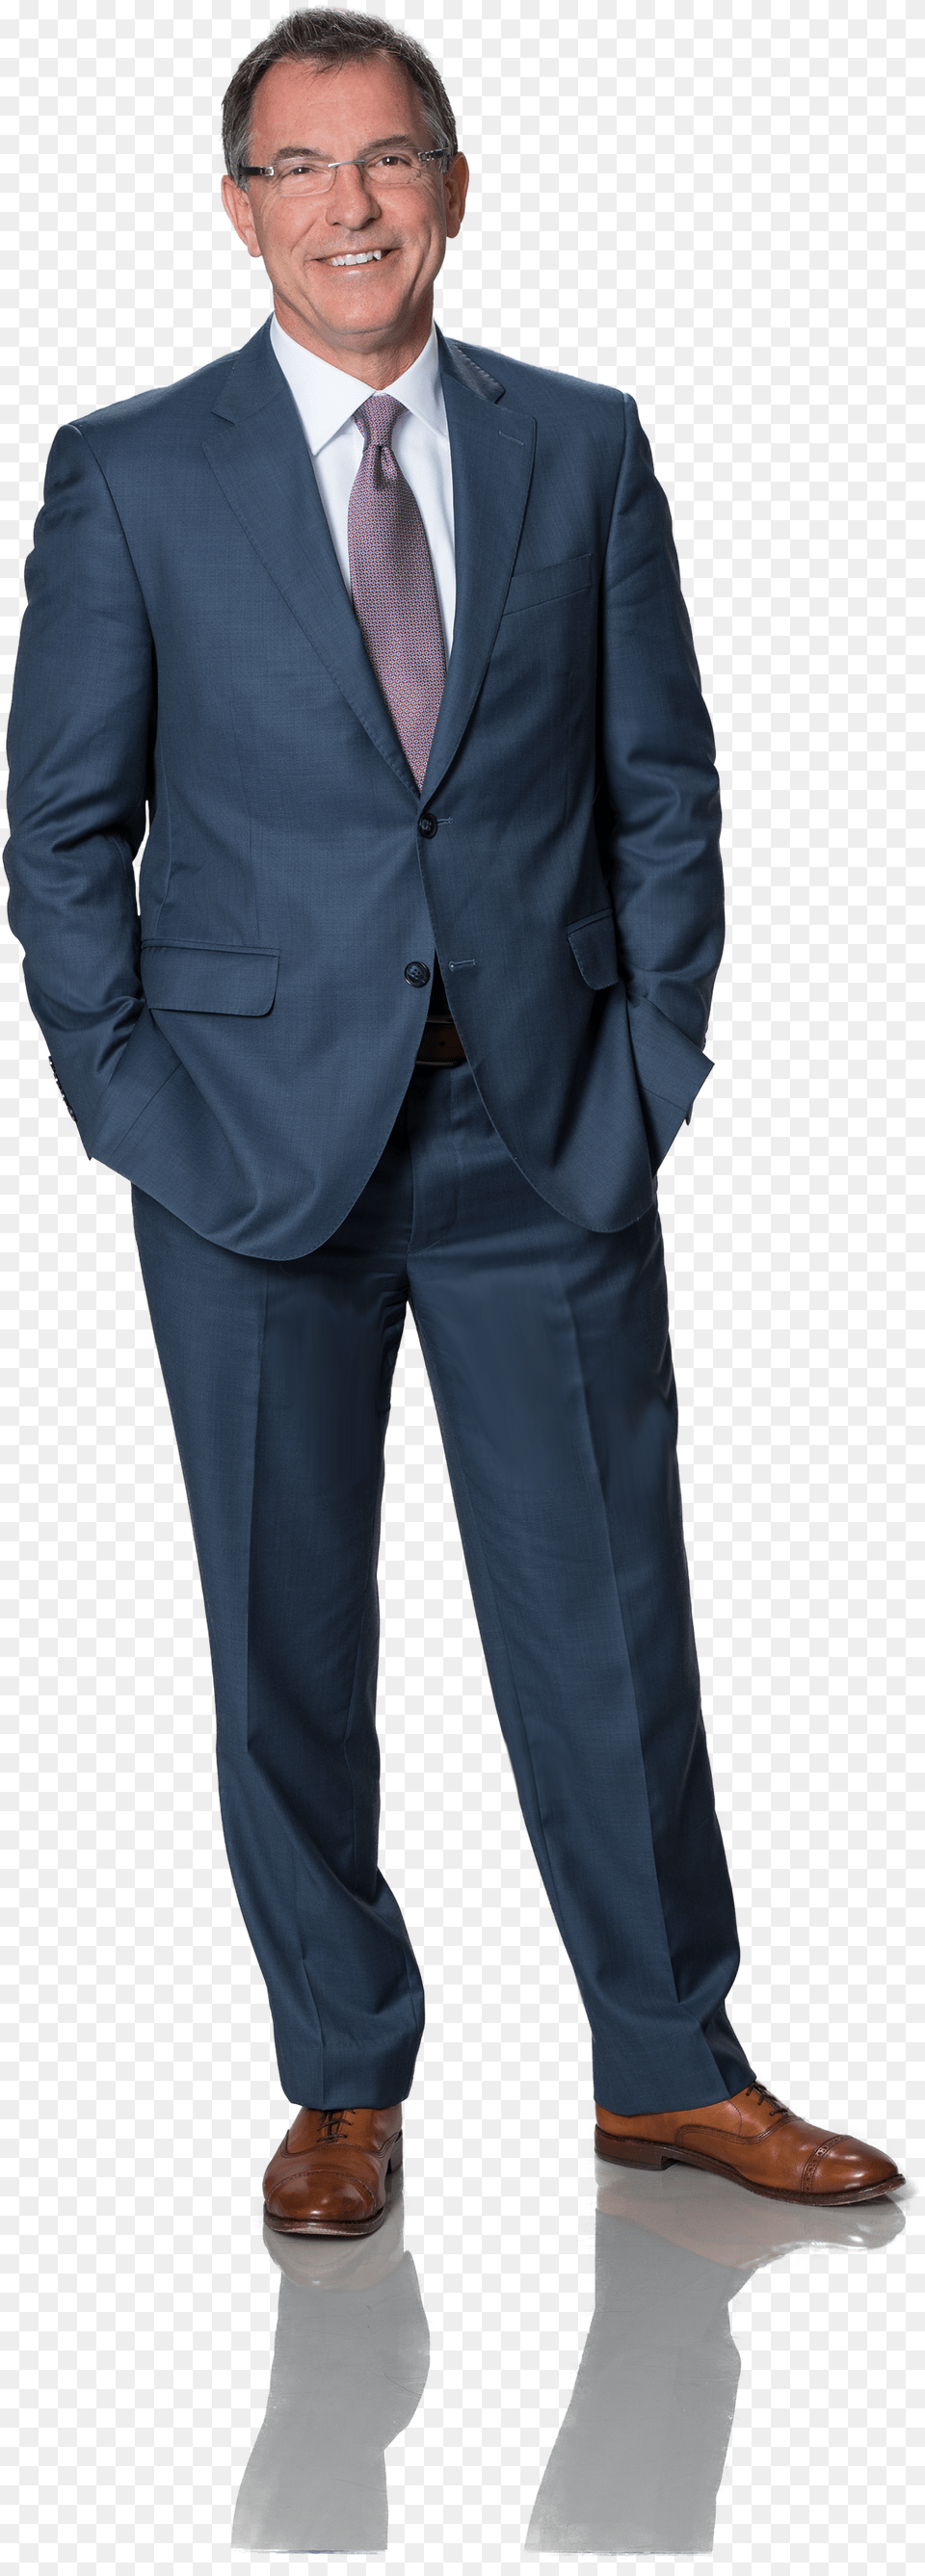 Gray Pants Navy Blazer Ralph Lauren, Tuxedo, Suit, Clothing, Formal Wear Png Image